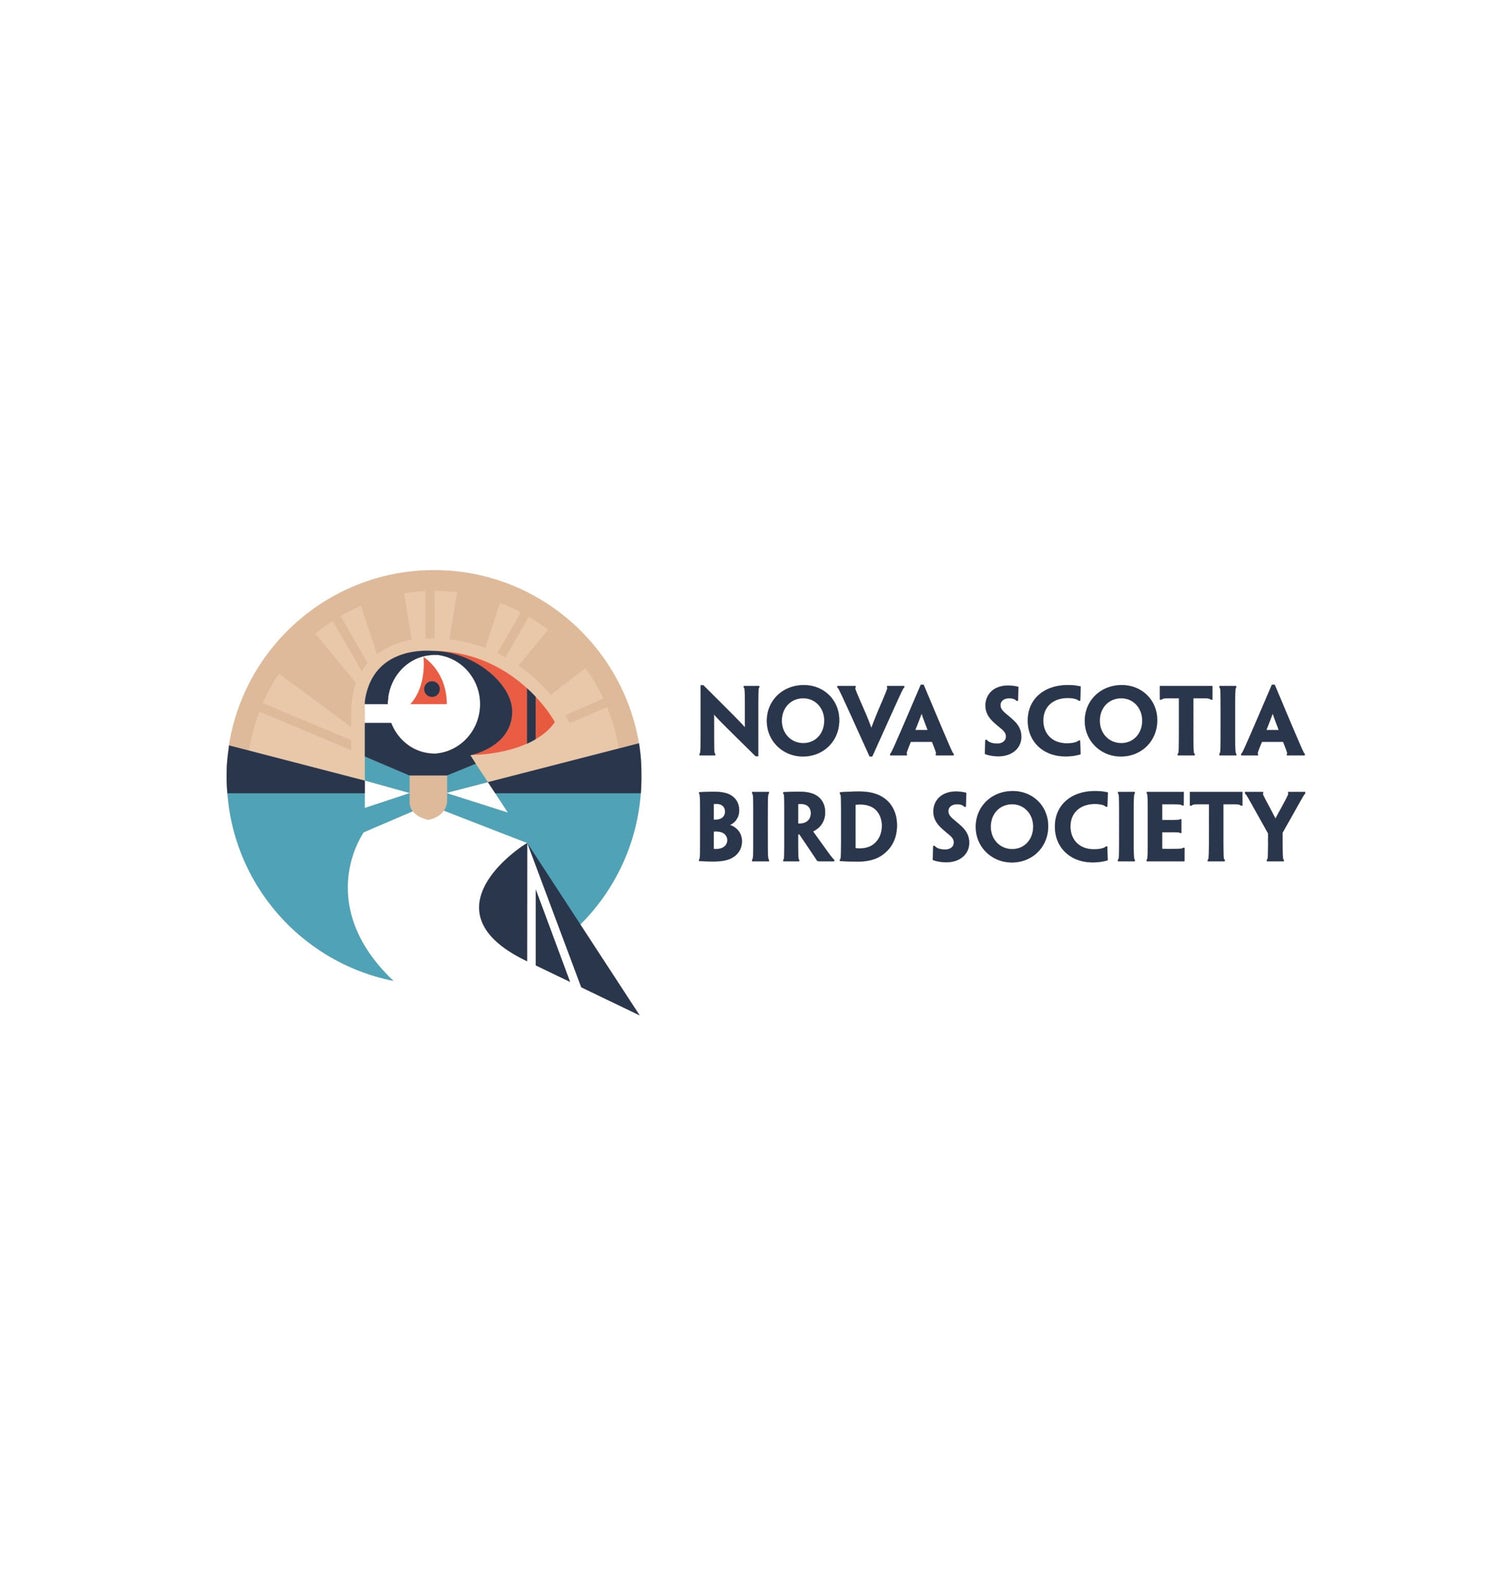 Nova Scotia Bird Society logo